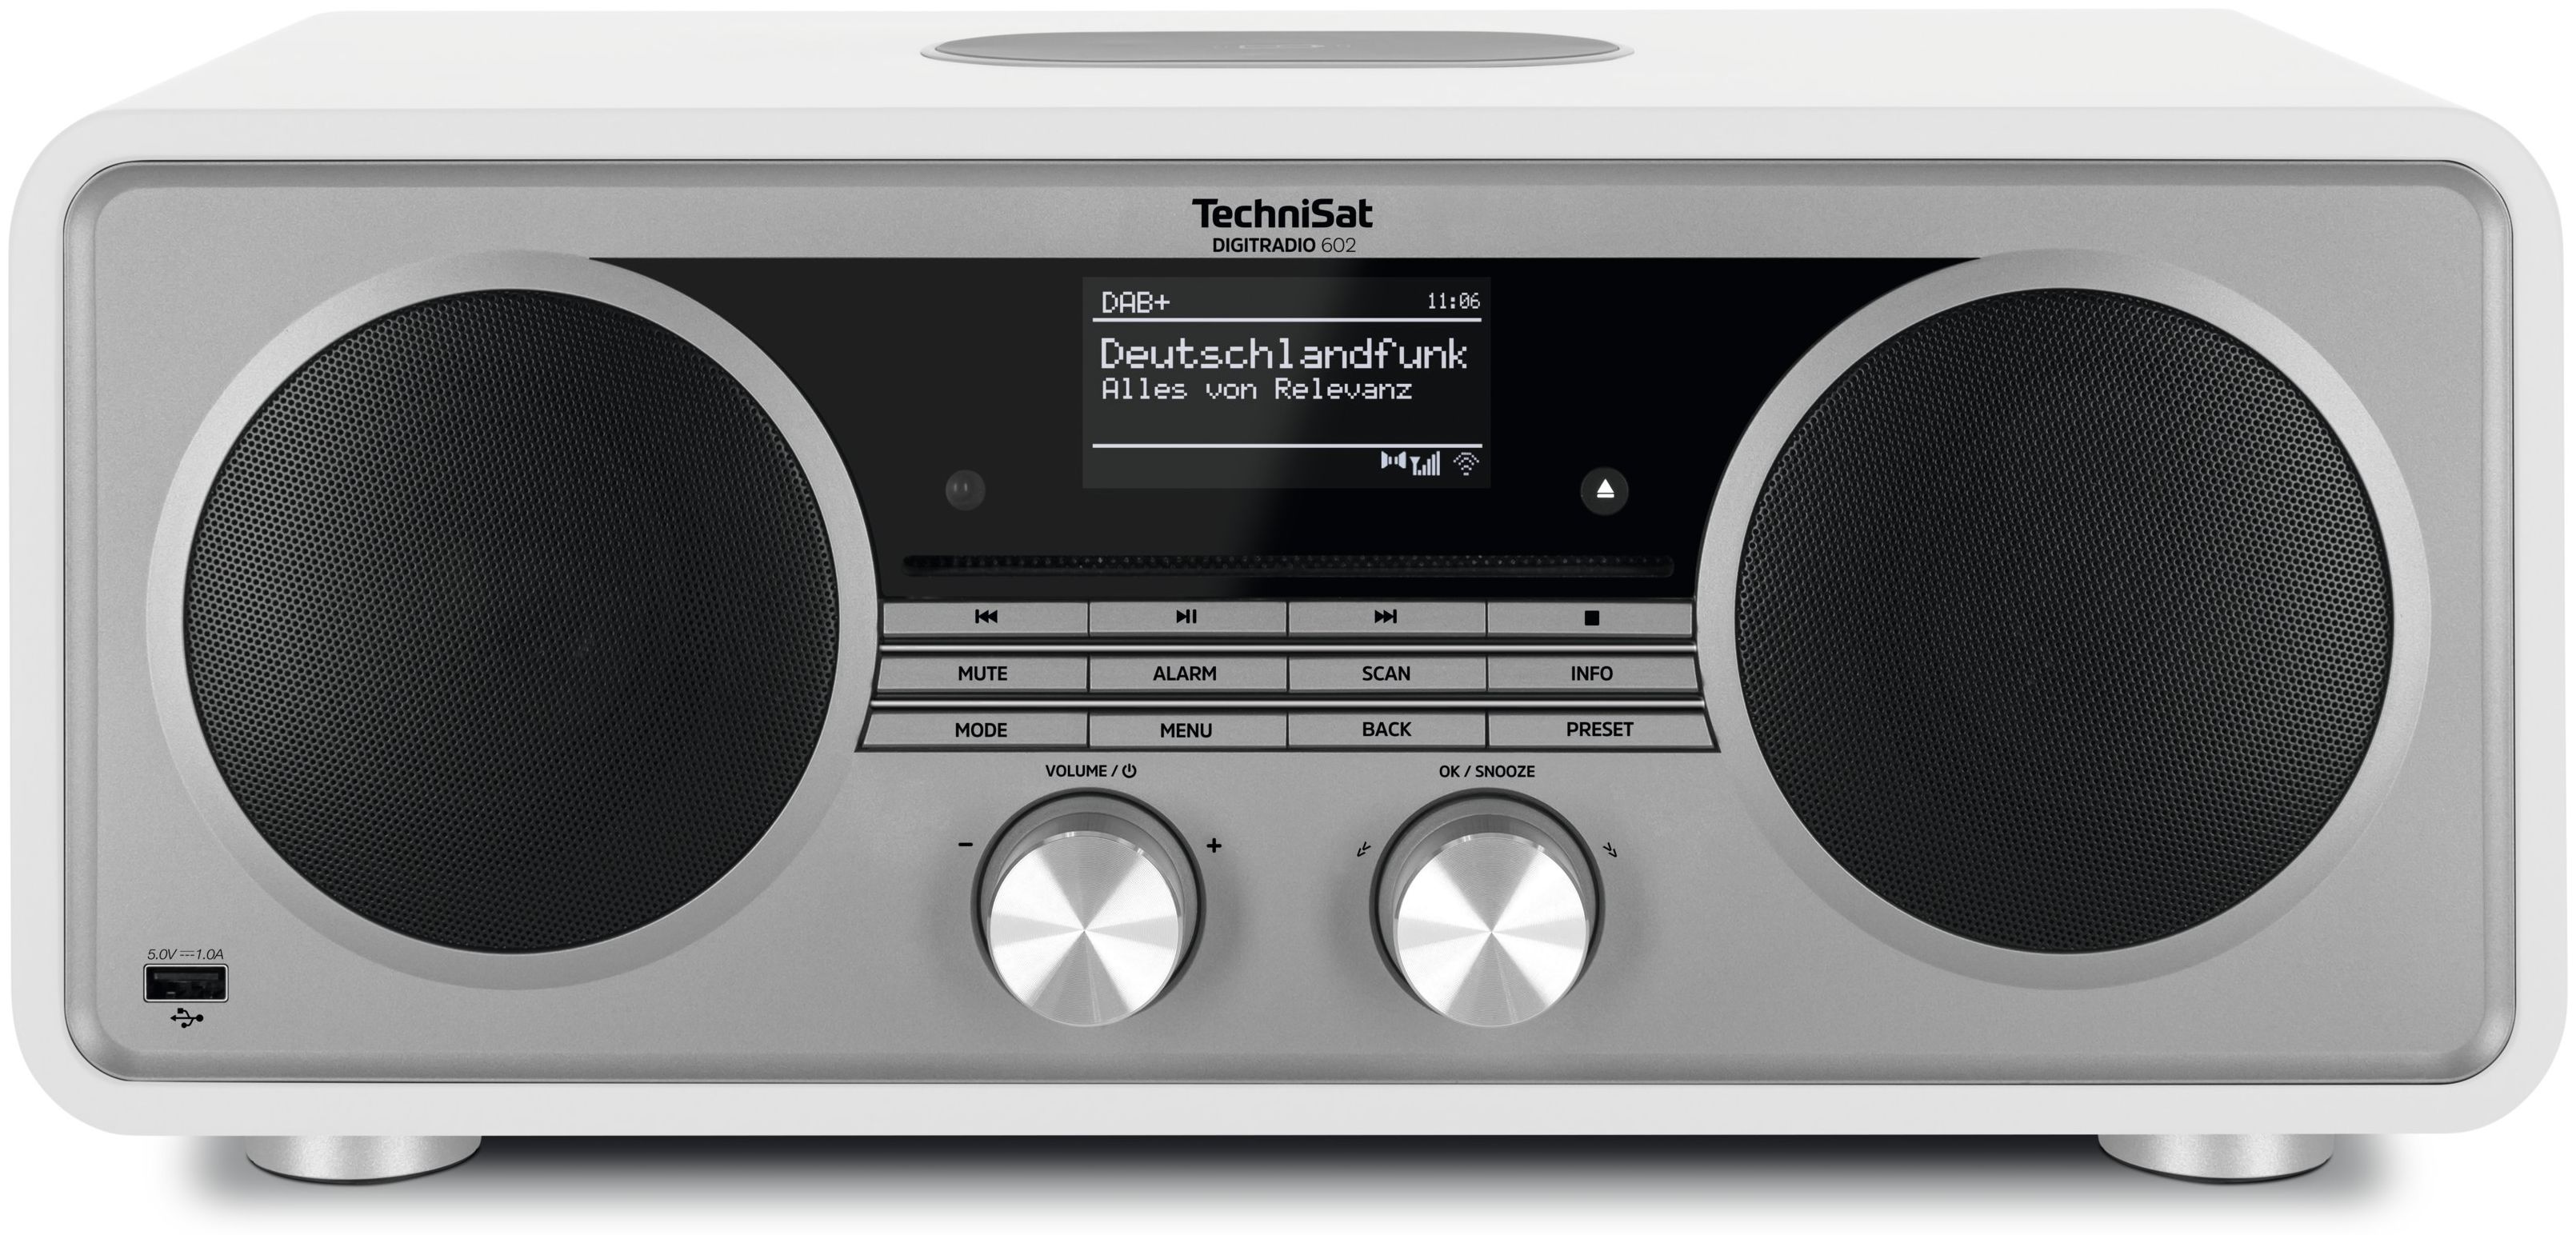 [Heiße Verkäufer] TechniSat Digitradio Radio Bluetooth expert FM (Silber, Internet Technomarkt 602 von Weiß) DAB